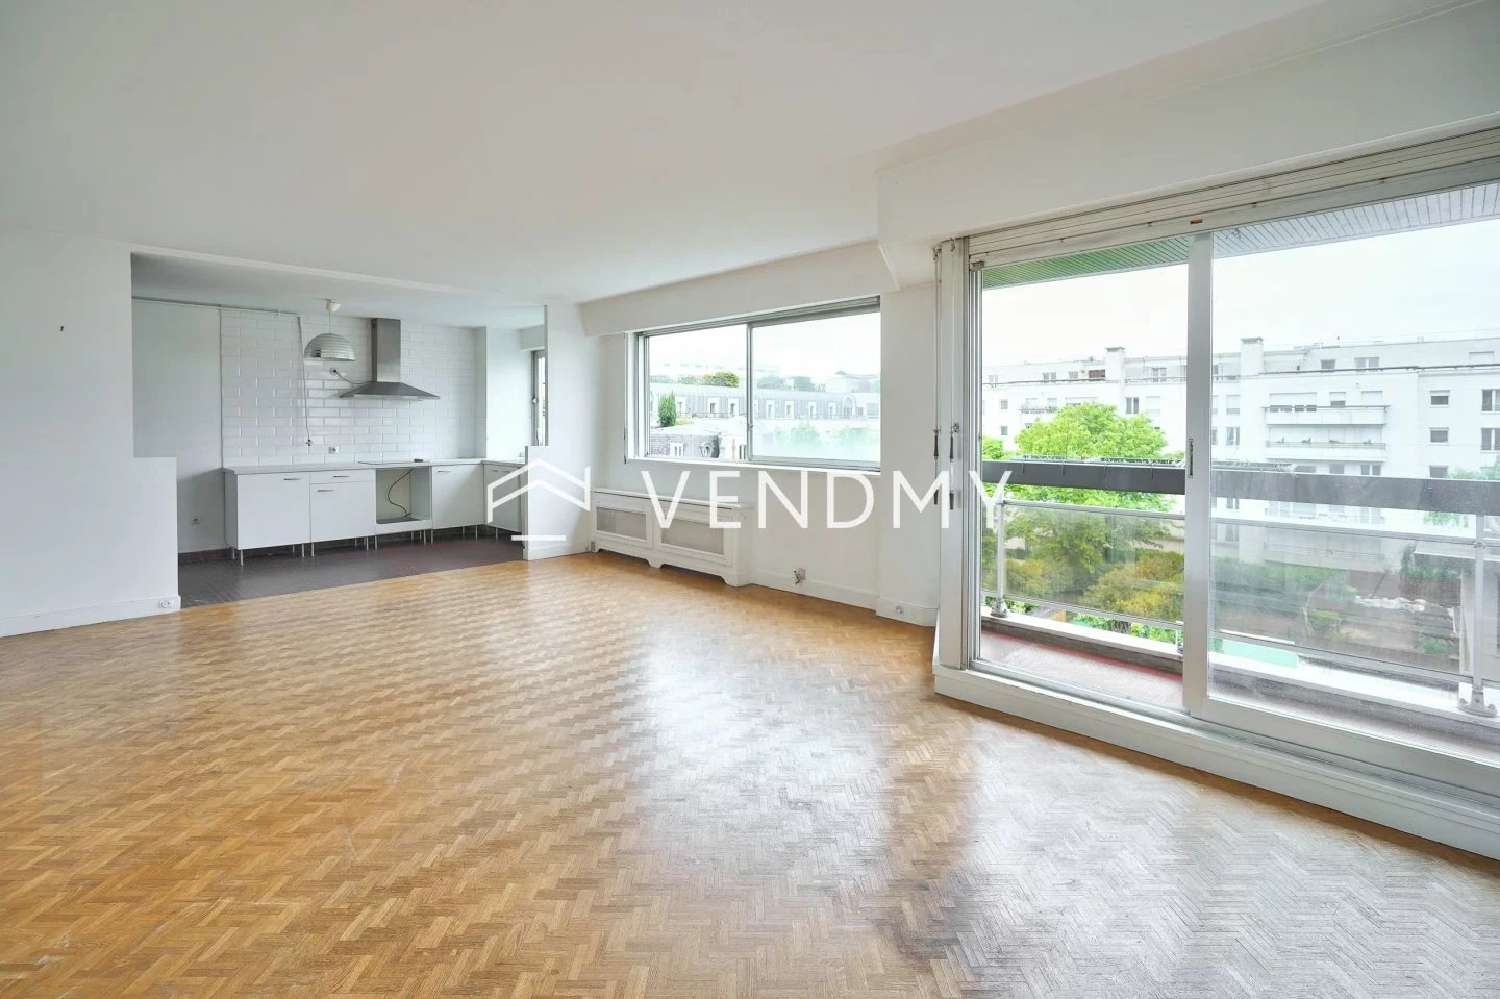  à vendre appartement Levallois-Perret Hauts-de-Seine 1